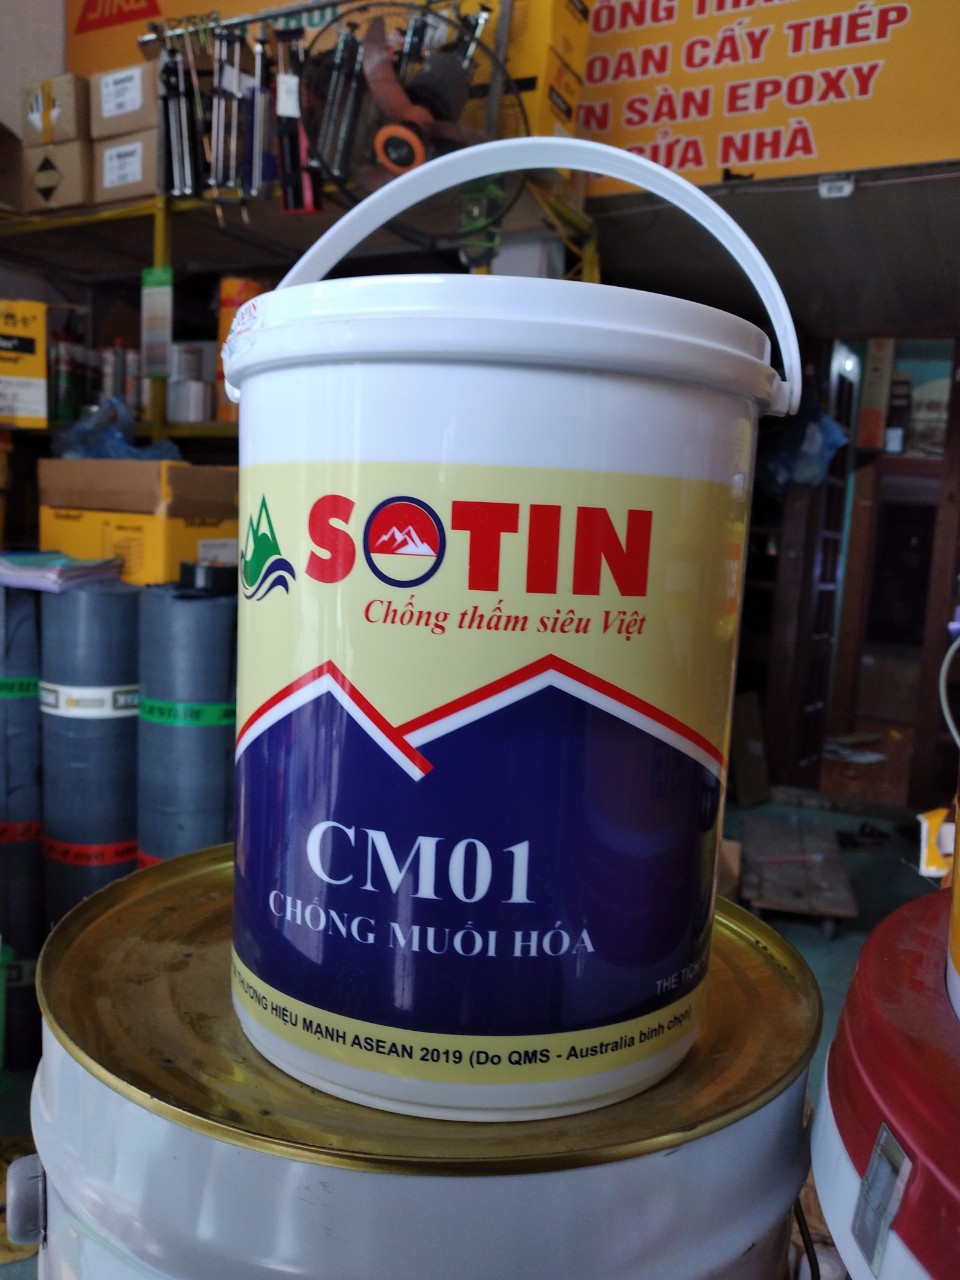 SOTIN CM01 - Chất chống muối hóa